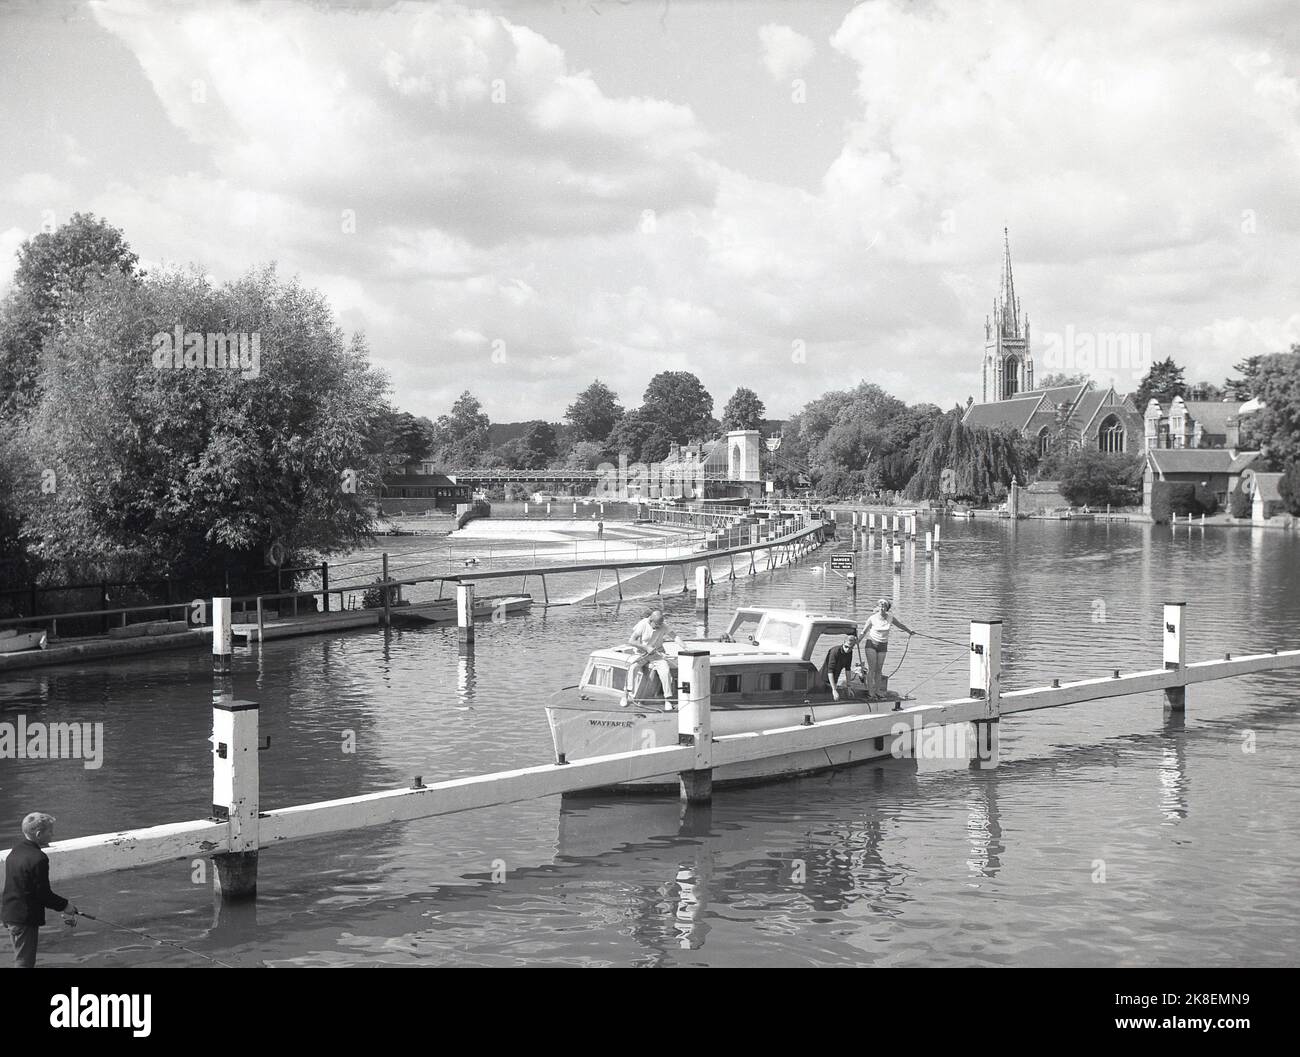 1966, historique, vue de cette époque d'un bateau de plaisance amarré sur la Tamise à Marlow, Berkshire, Angleterre, Royaume-Uni. Sur la photo au loin se trouve le pont suspendu au-dessus du déversoir et de la flèche de l'église de tout Saint. Banque D'Images